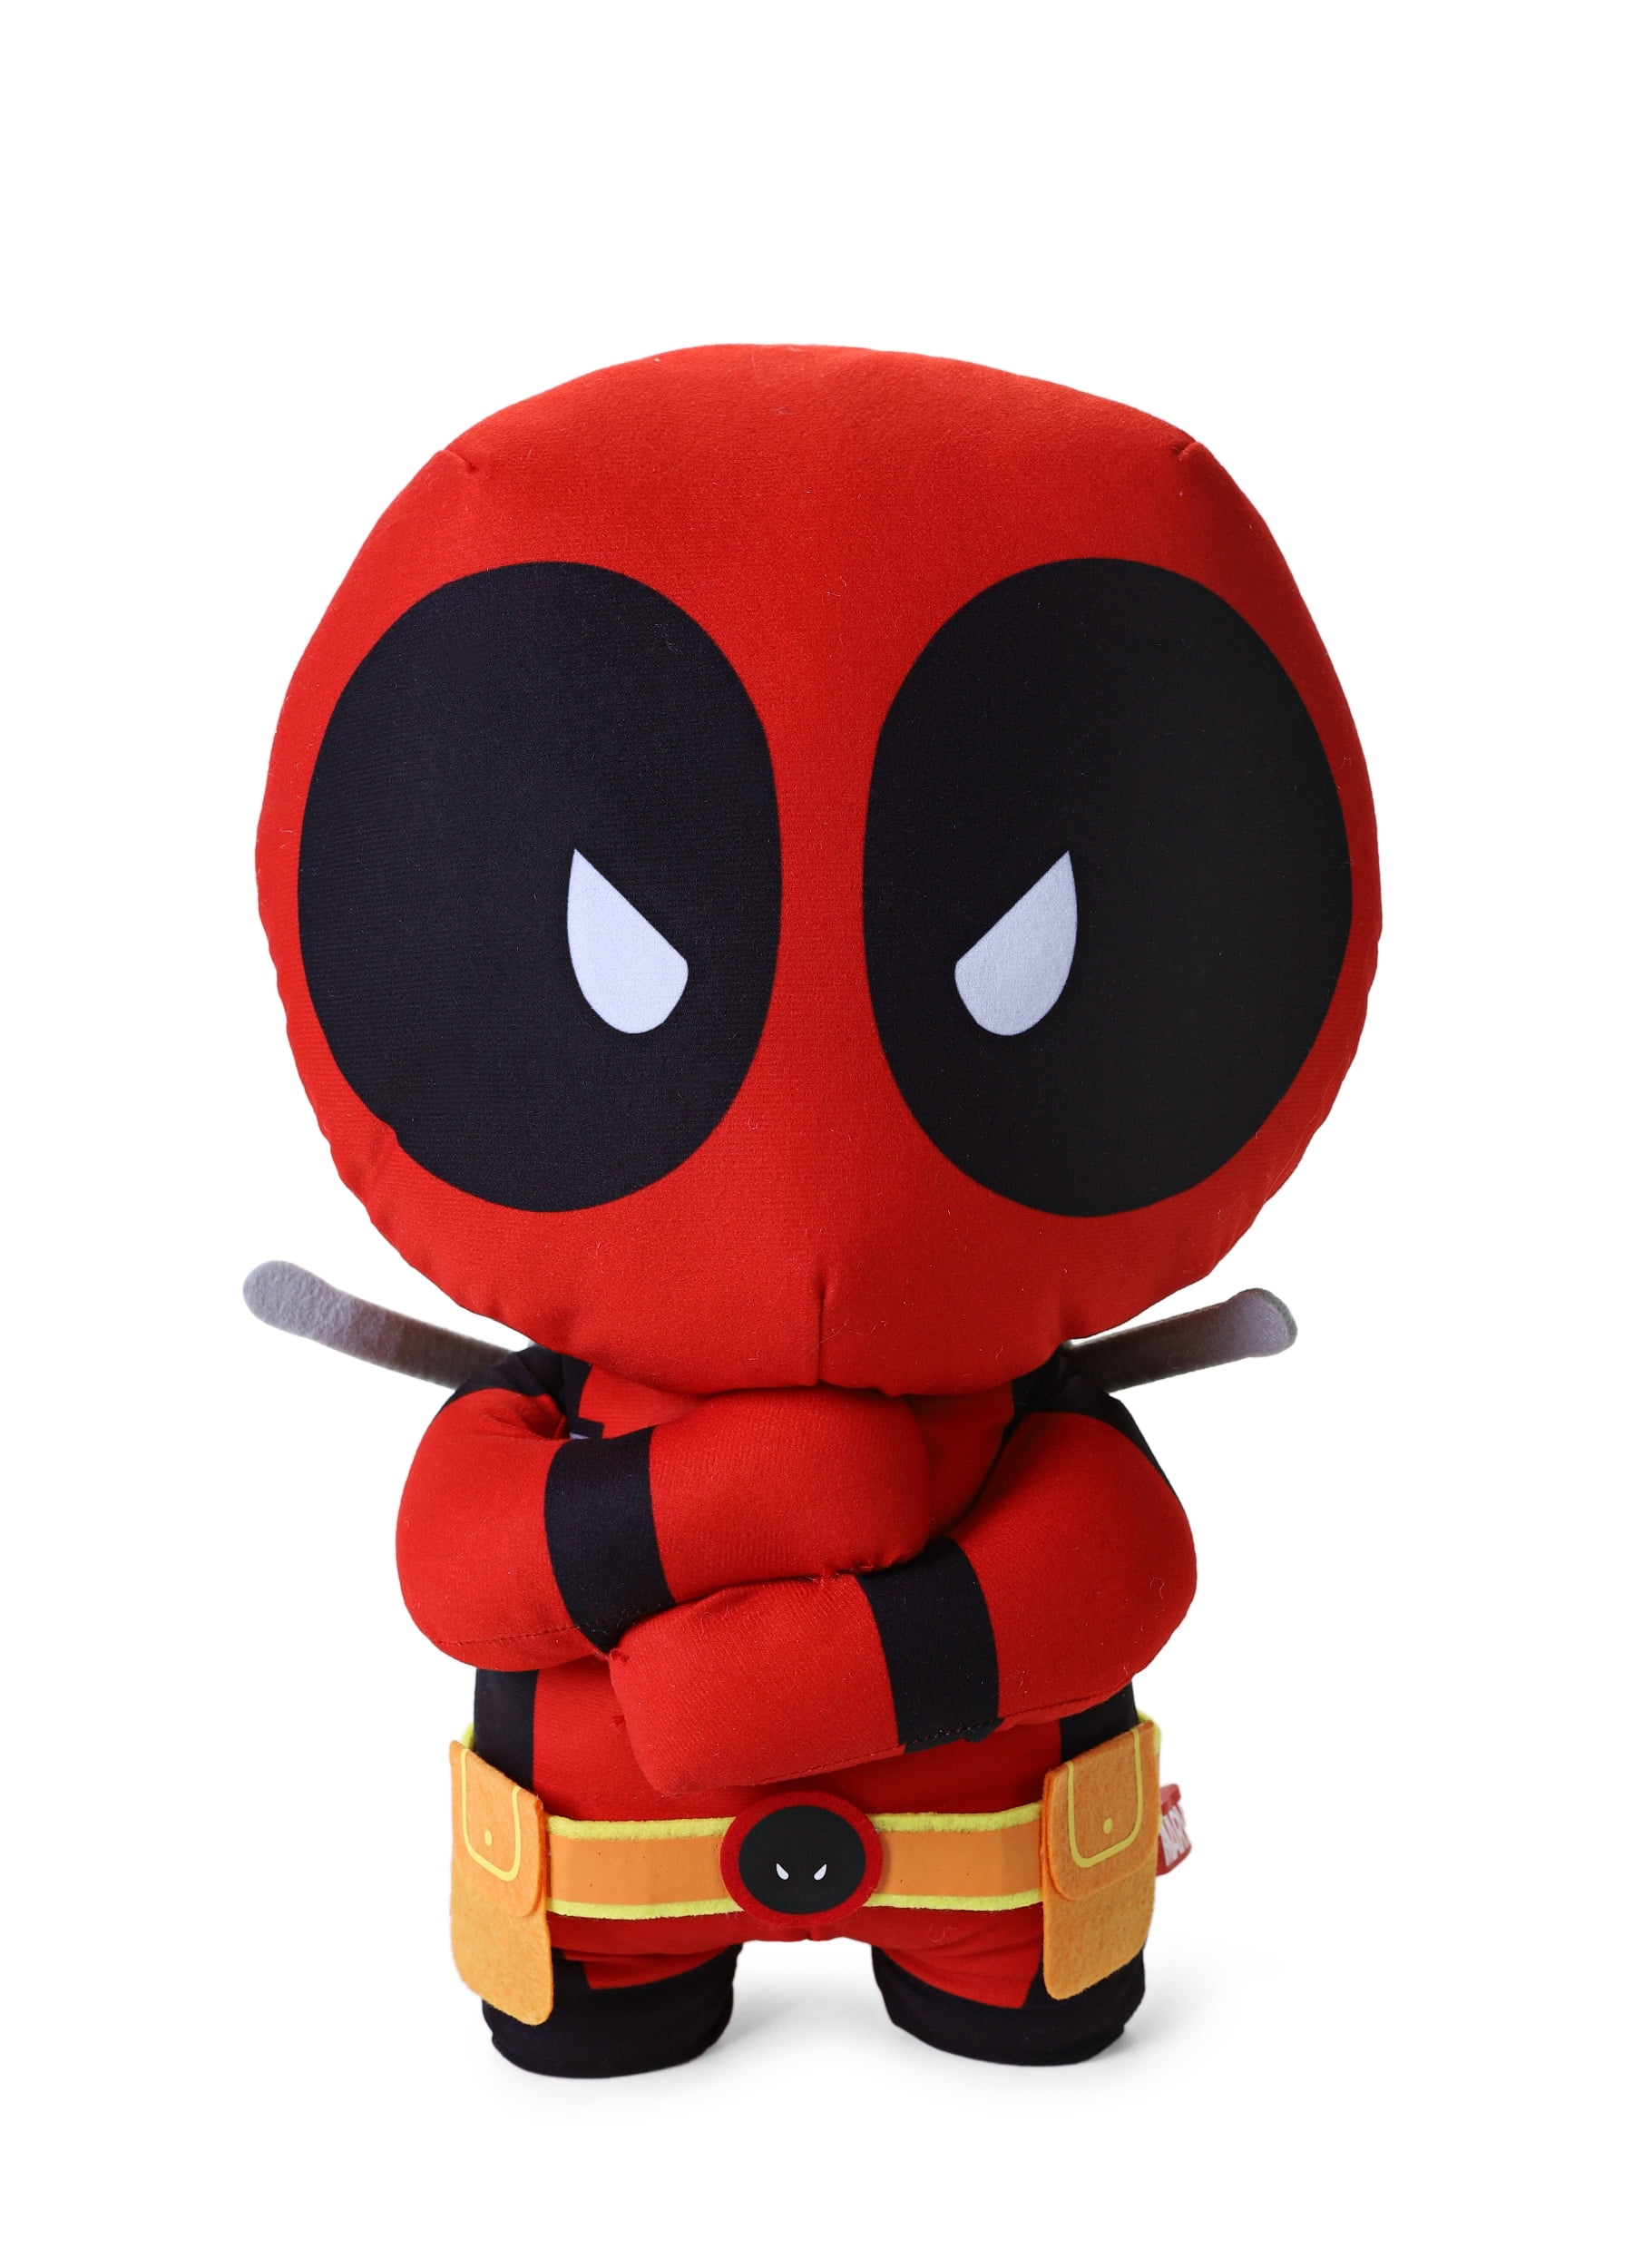 Marvel Deadpool Plush Toy stuffed 14"